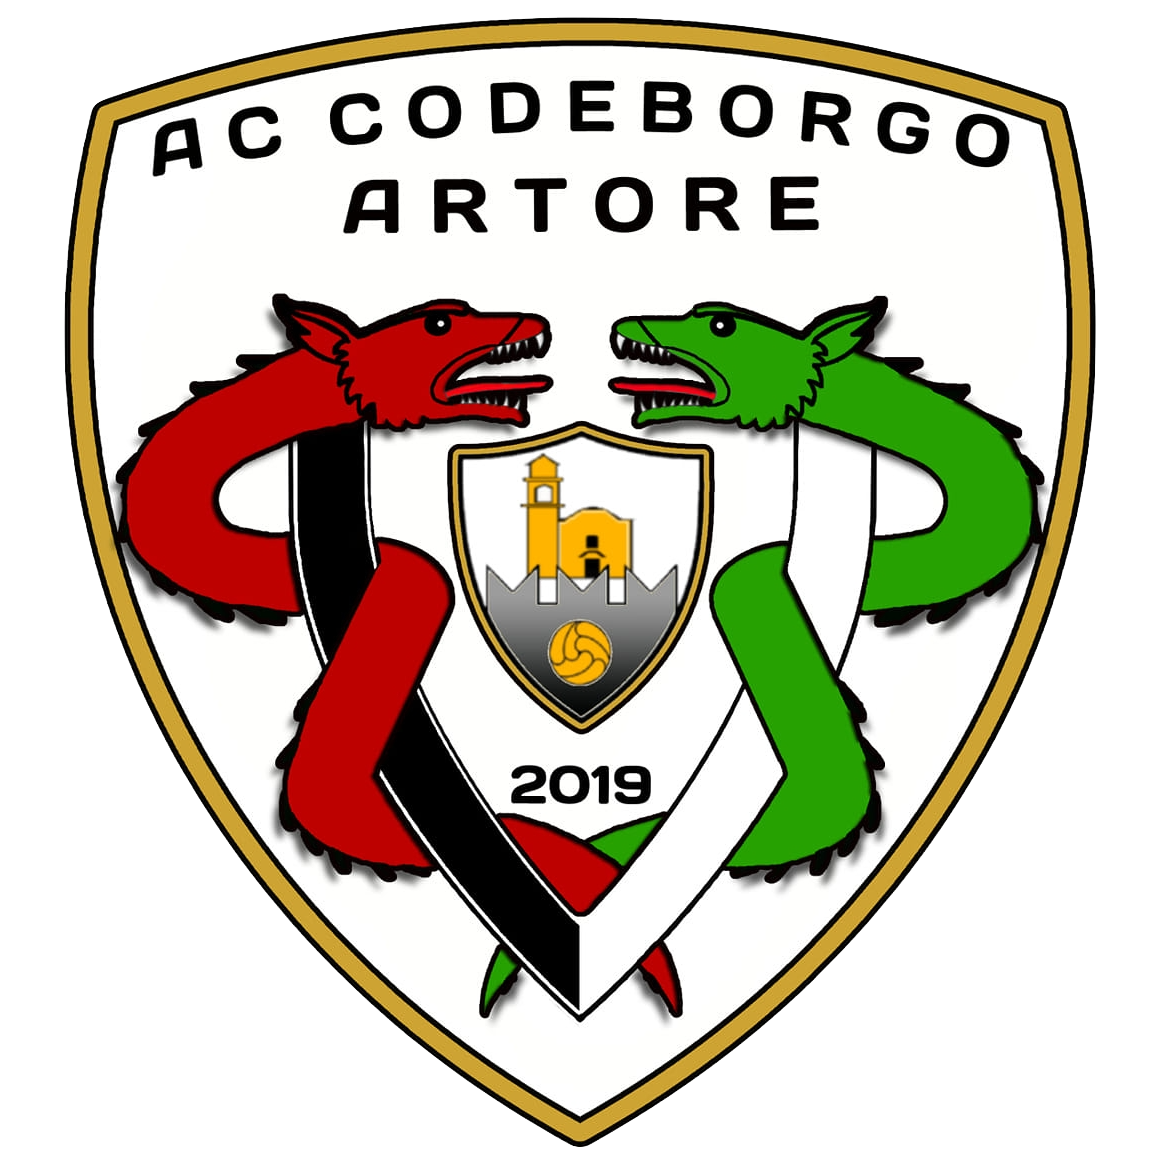 Wappen AC Codeborgo-Artore